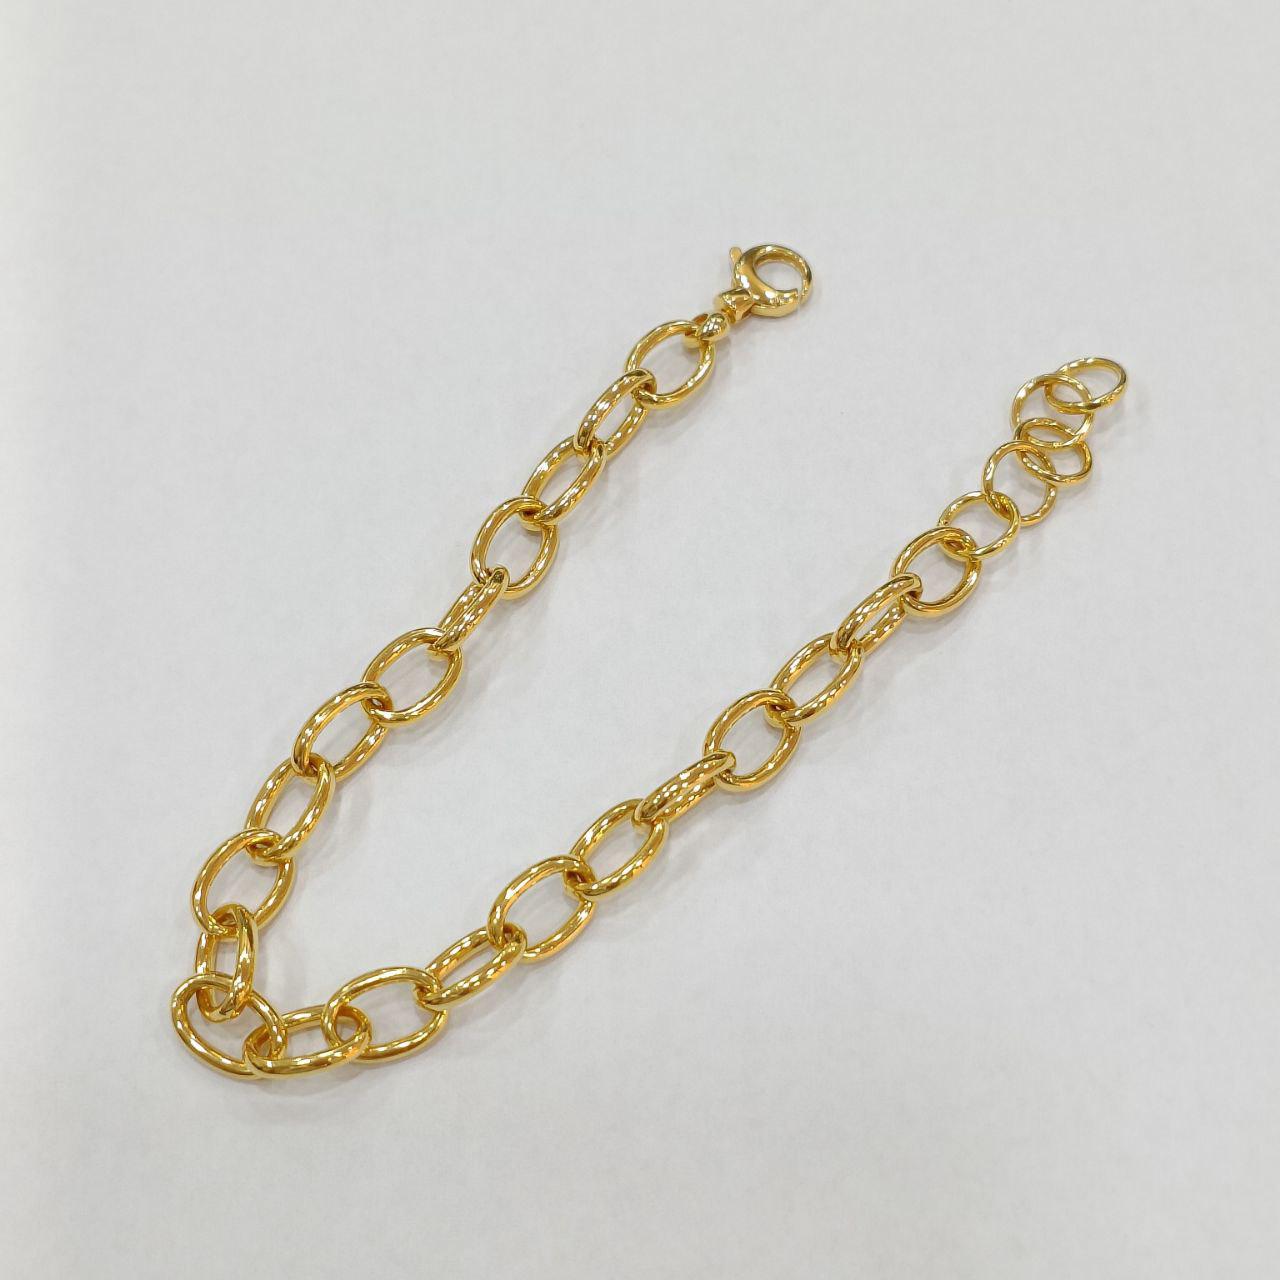 22k / 916 Gold Oval Ring Bracelet Designer-916 gold-Best Gold Shop